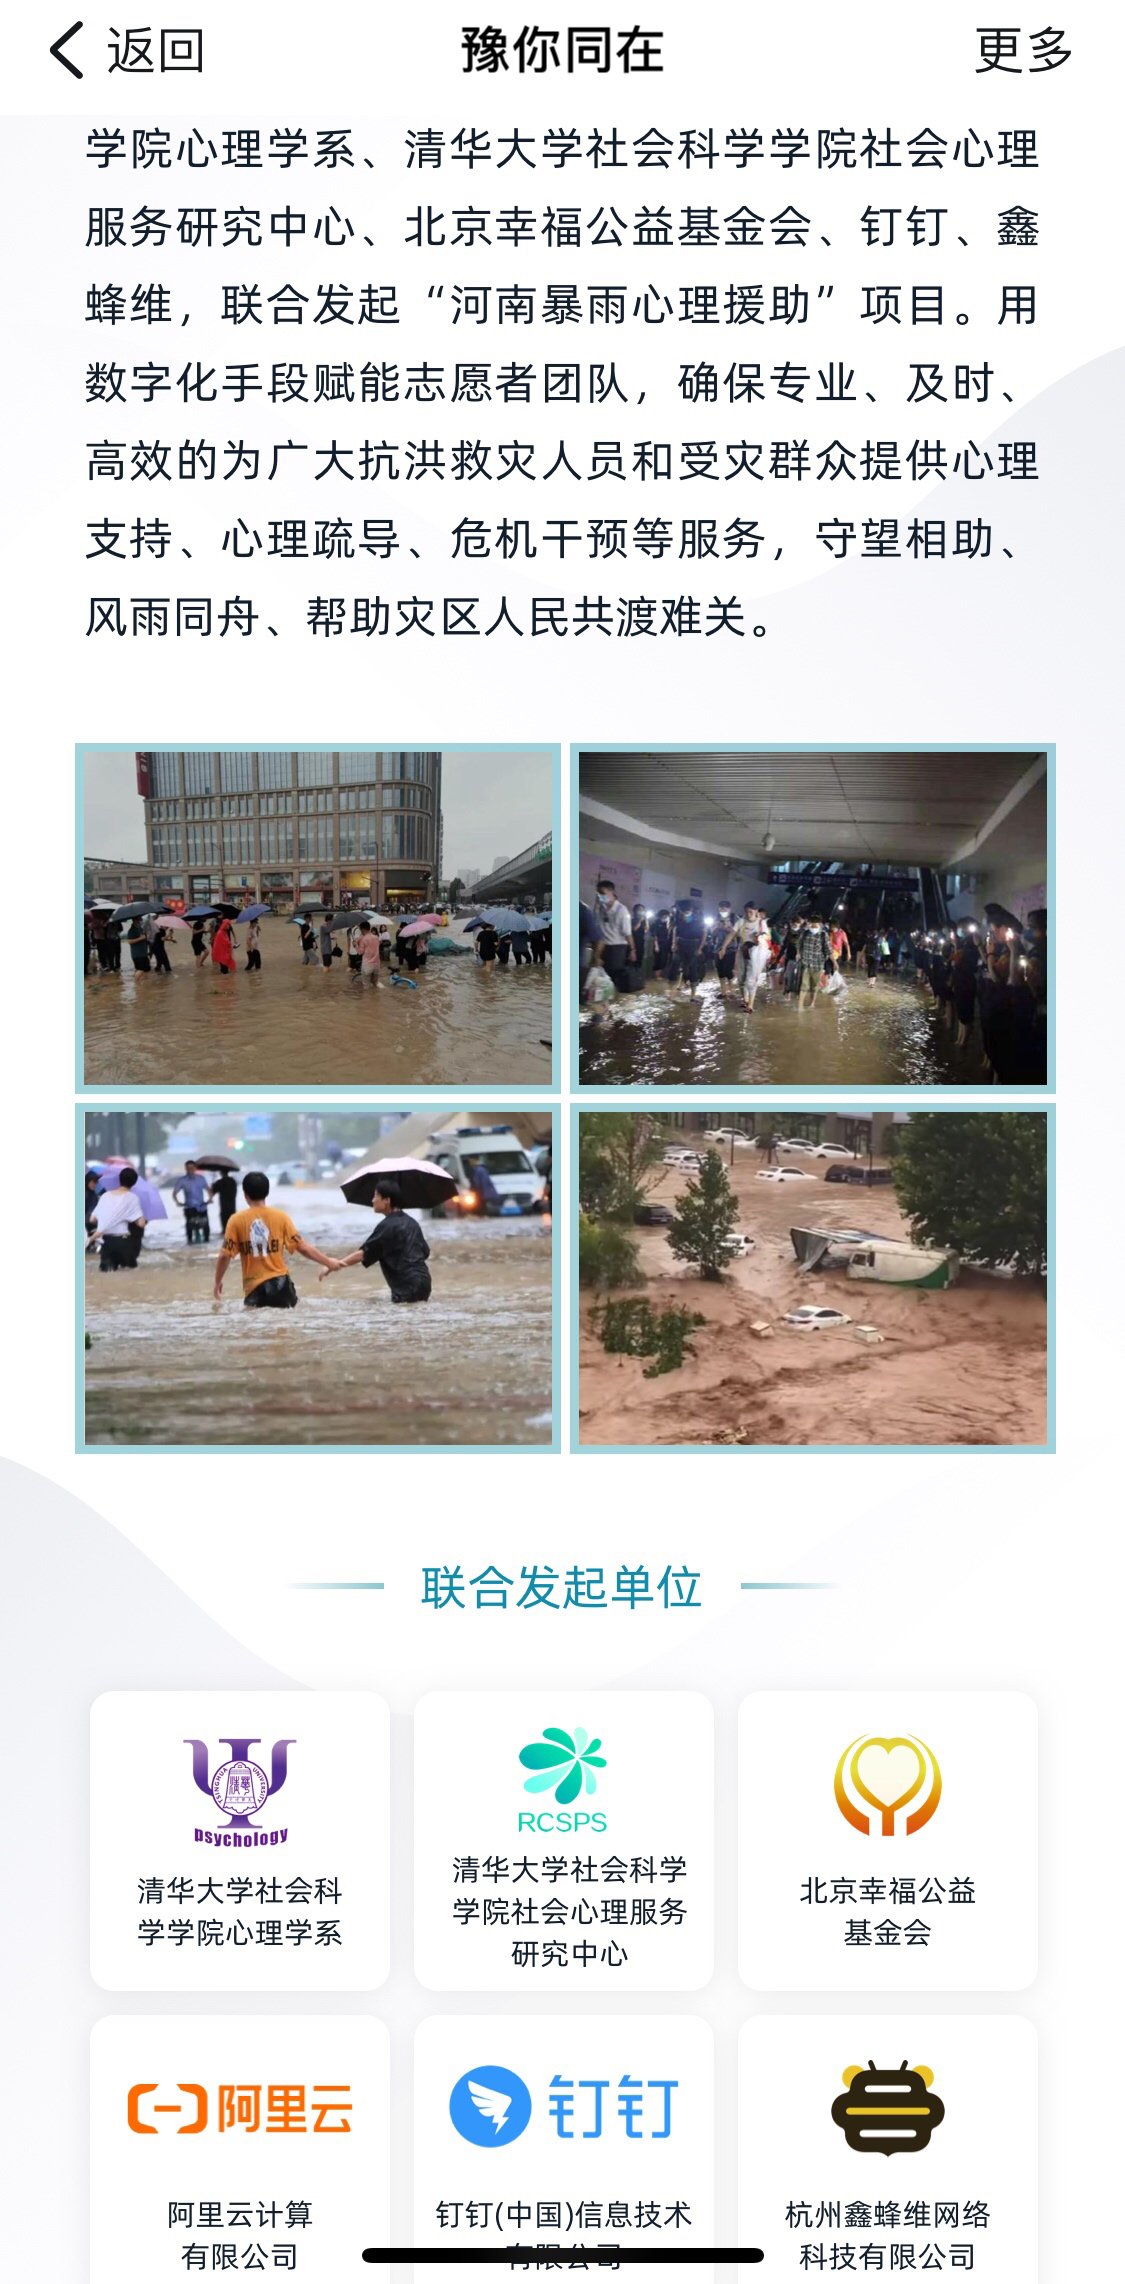 北京幸福公益基金会|“河南暴雨心理援助”计划启动 上线2天已收到300多名志愿者报名